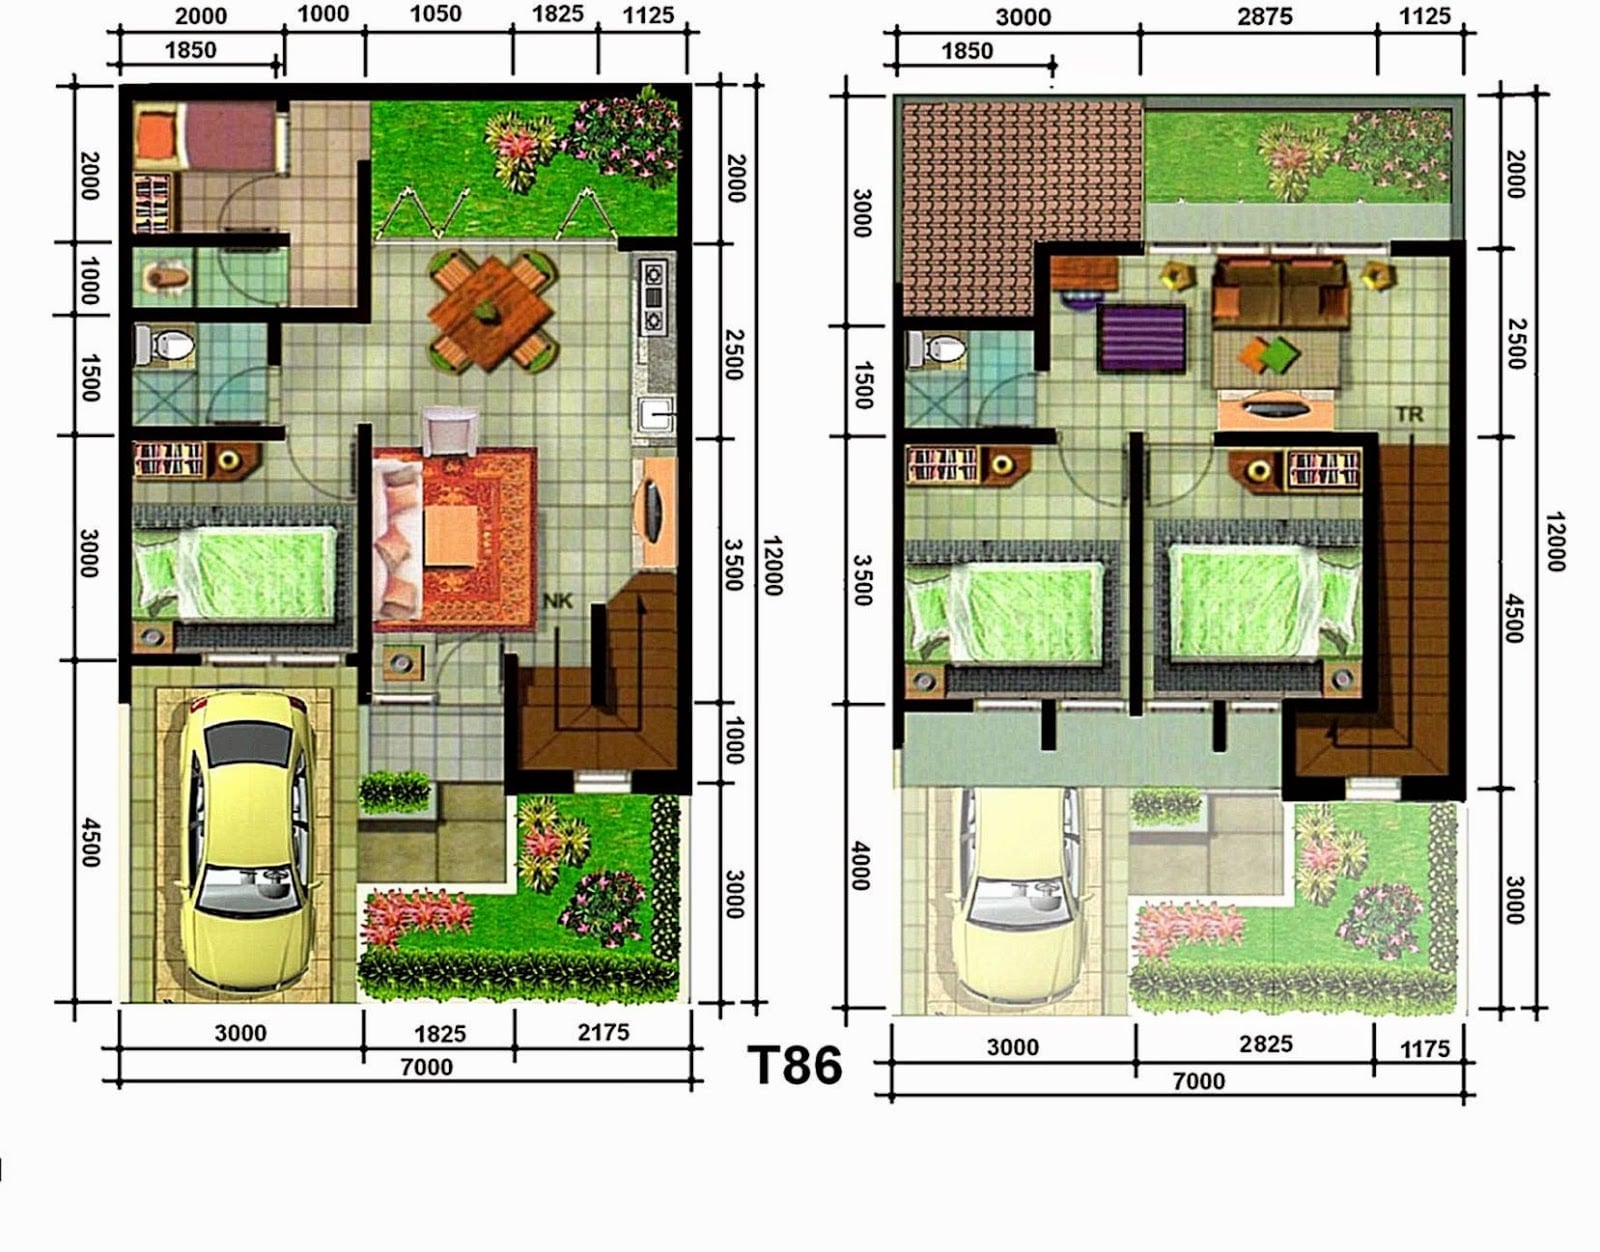 Desain Denah Rumah Type 60 2 Lantai dengan 1 Kamar